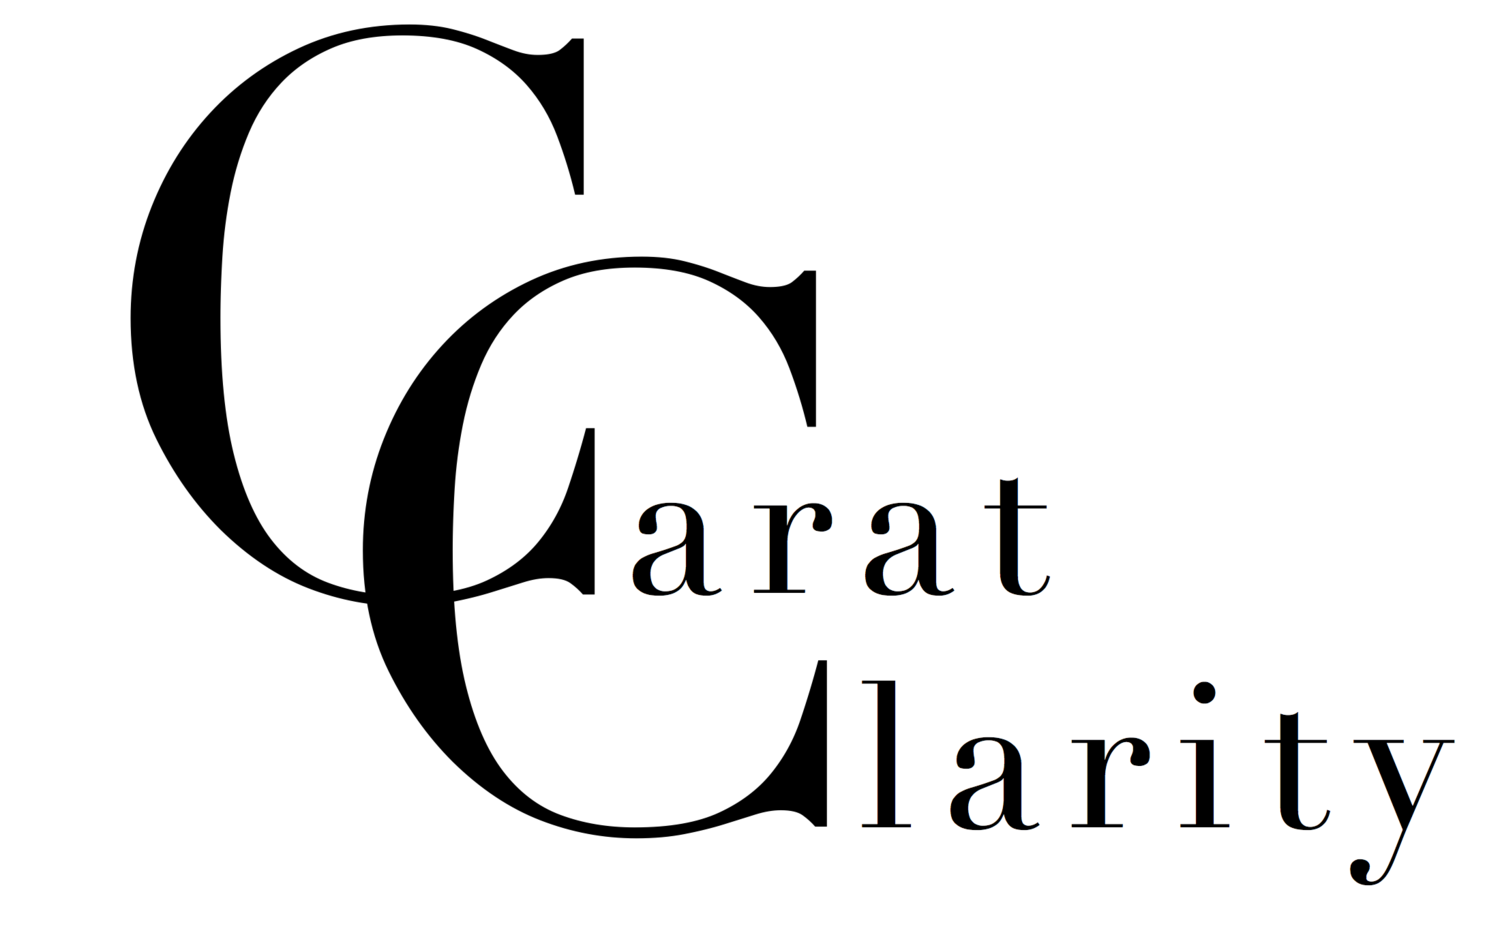 Carat Clarity